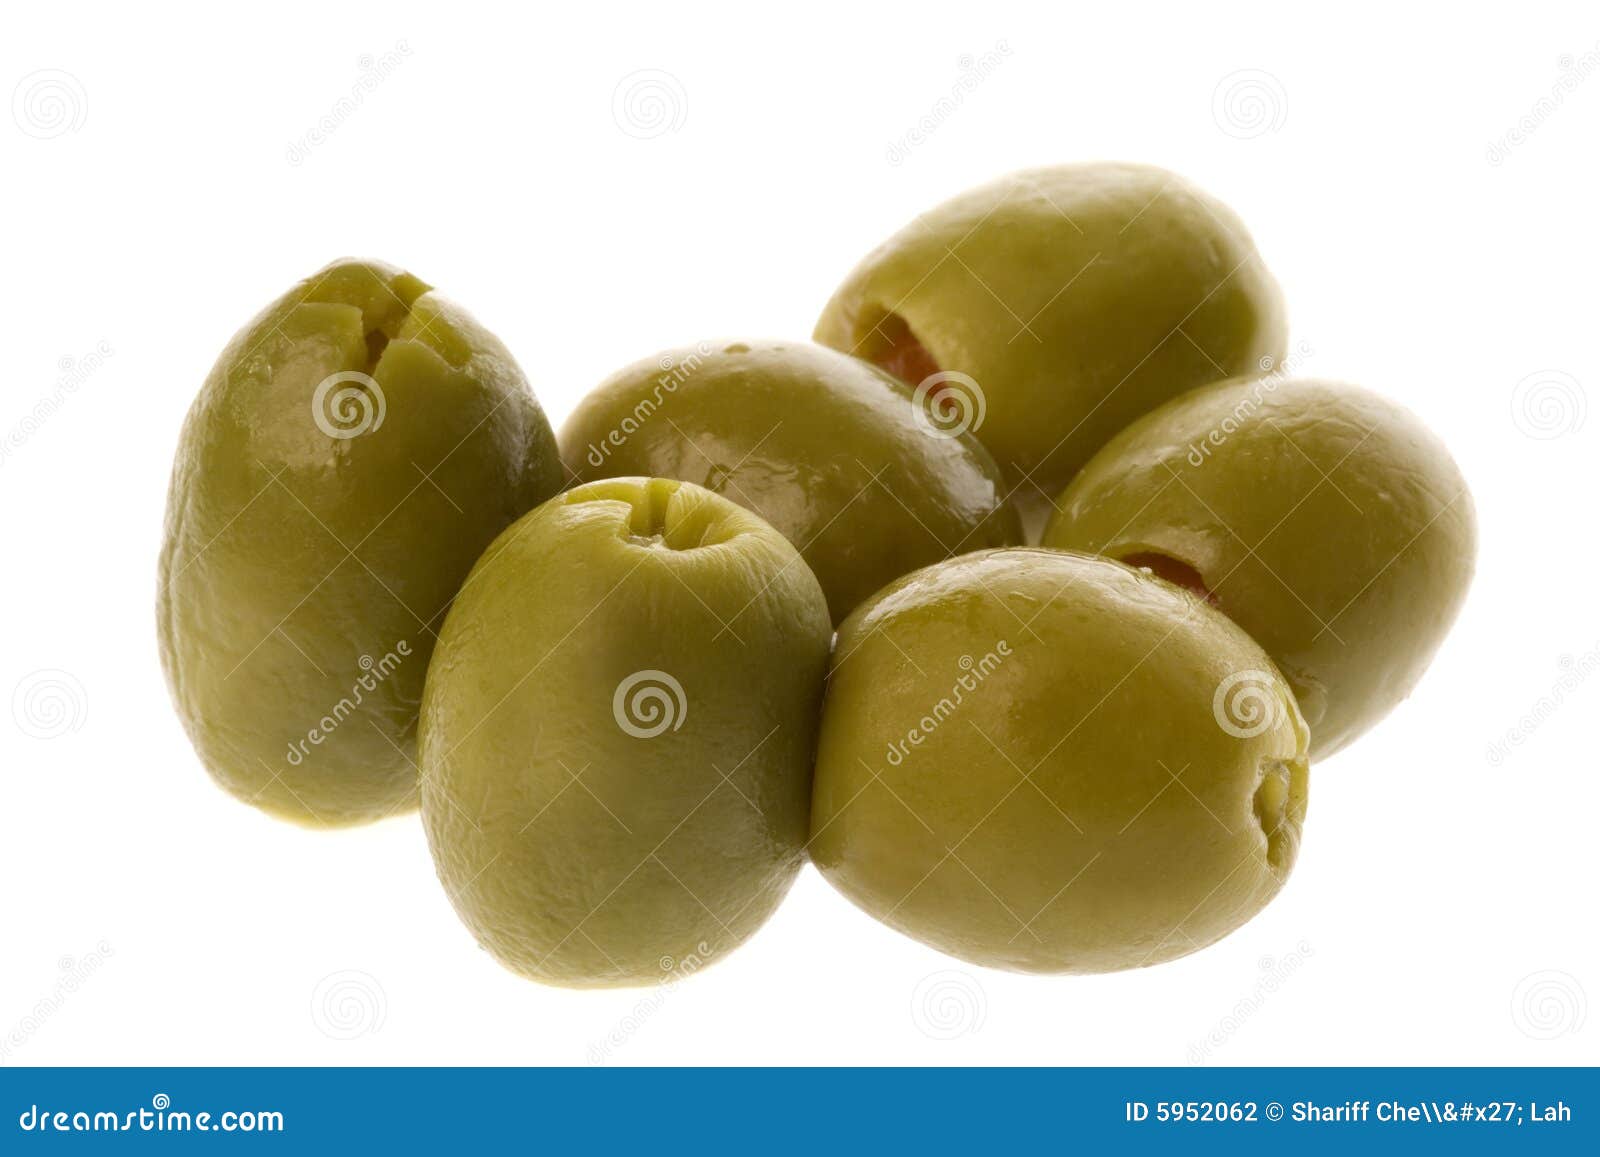 stuffed manzanilla olives